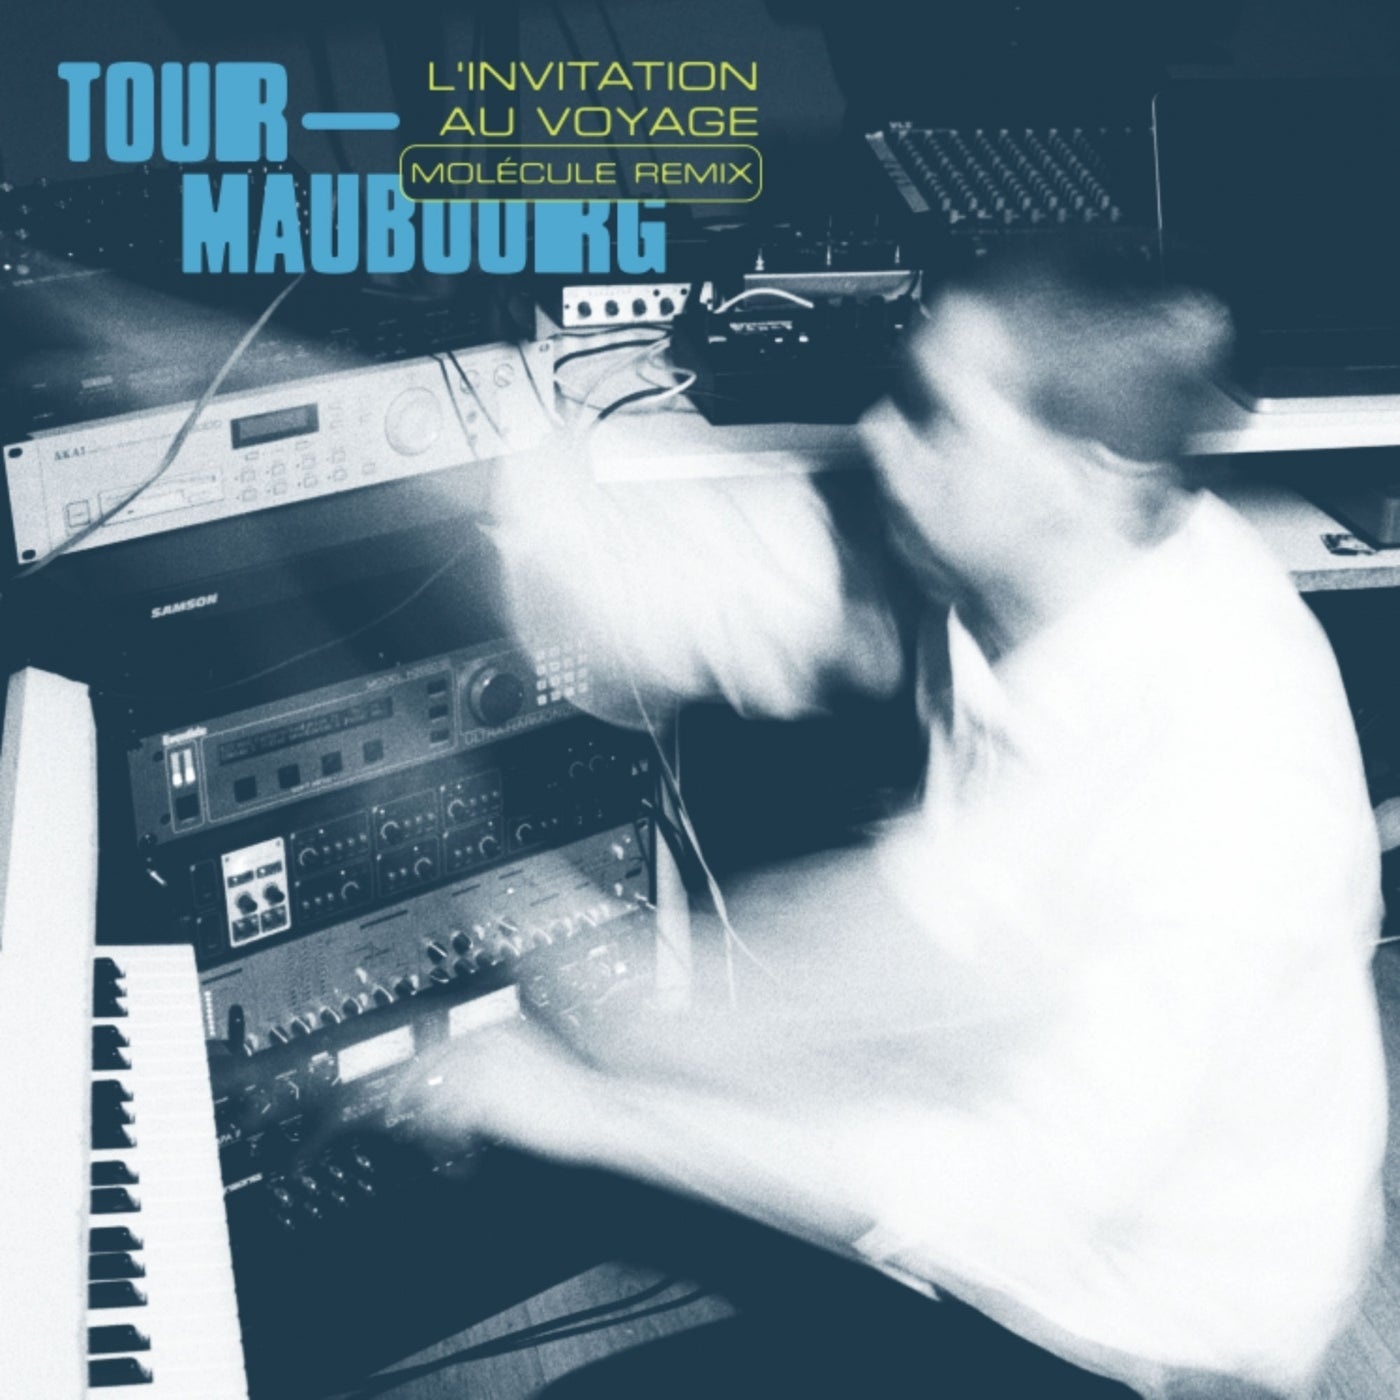 Tour-Maubourg - L'invitation au voyage (Molecule Remix) [PNLPR0012]